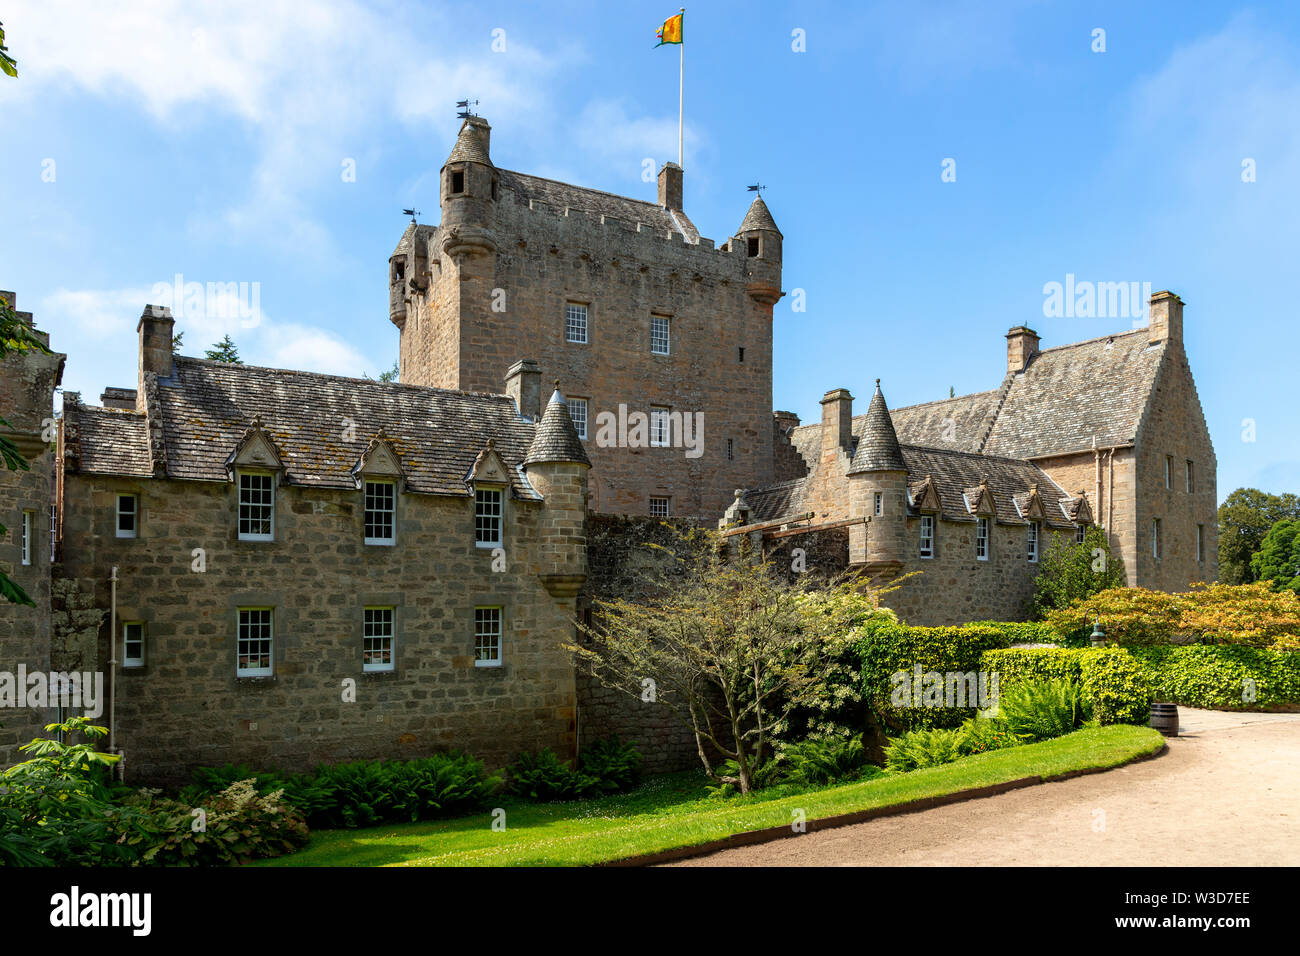 Cawdor Castle and its gardens, Cawdor, northeast of Inverness, Scotland, UK Stock Photo